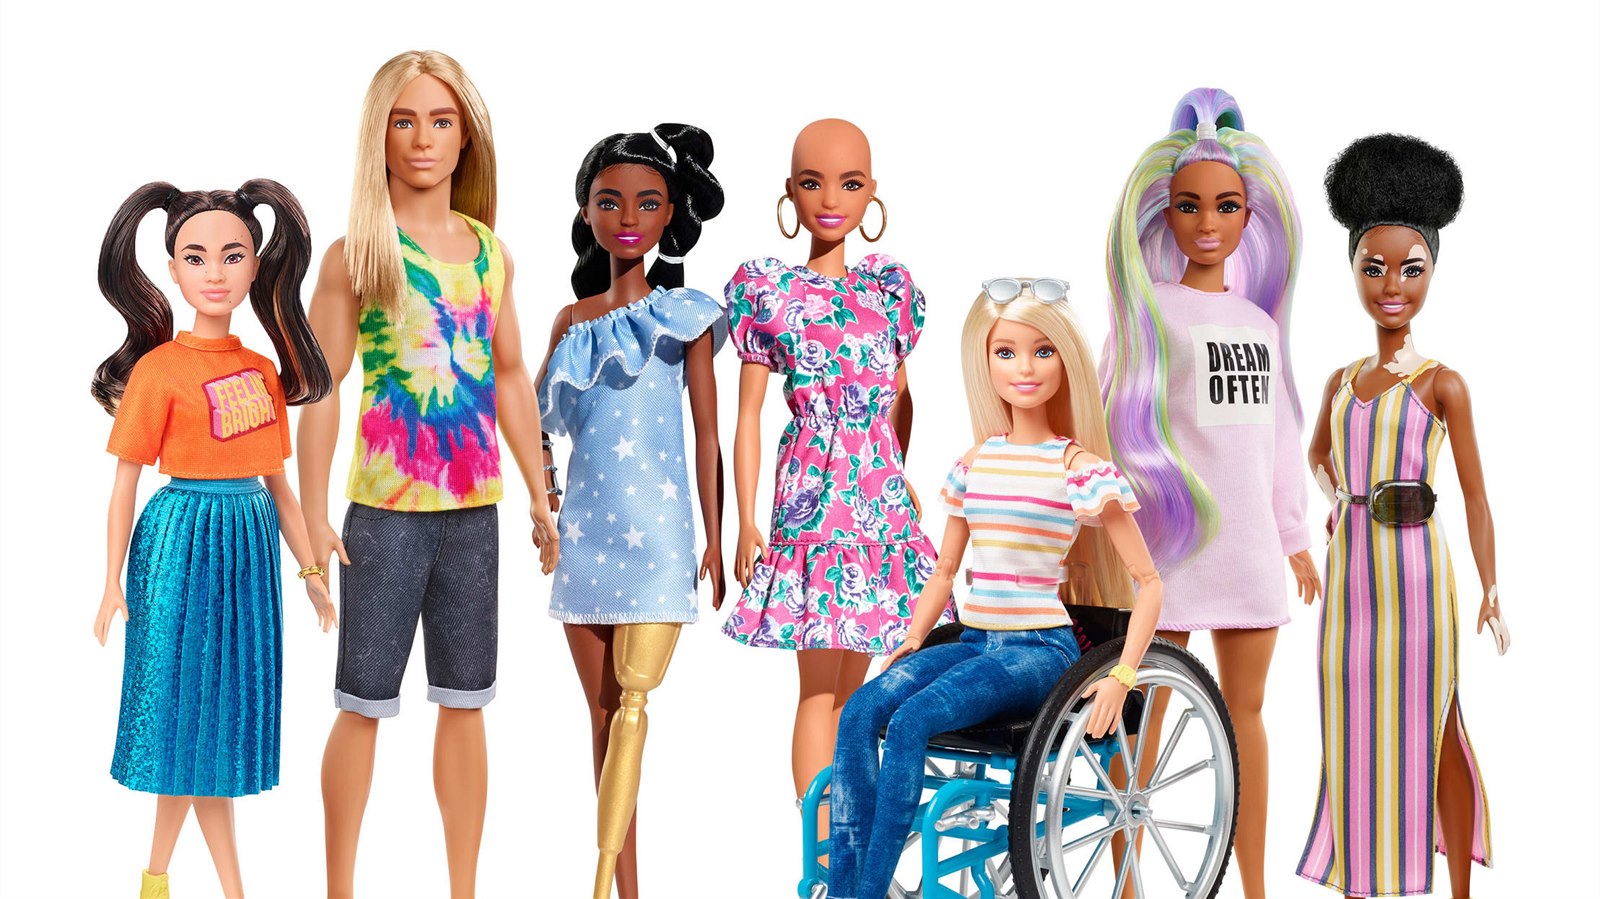 Plešatá, baculatá, na vozíčku i s kožní poruchou. Mattel po kritice prodává  nové Barbie | Zajímavosti | Lidovky.cz